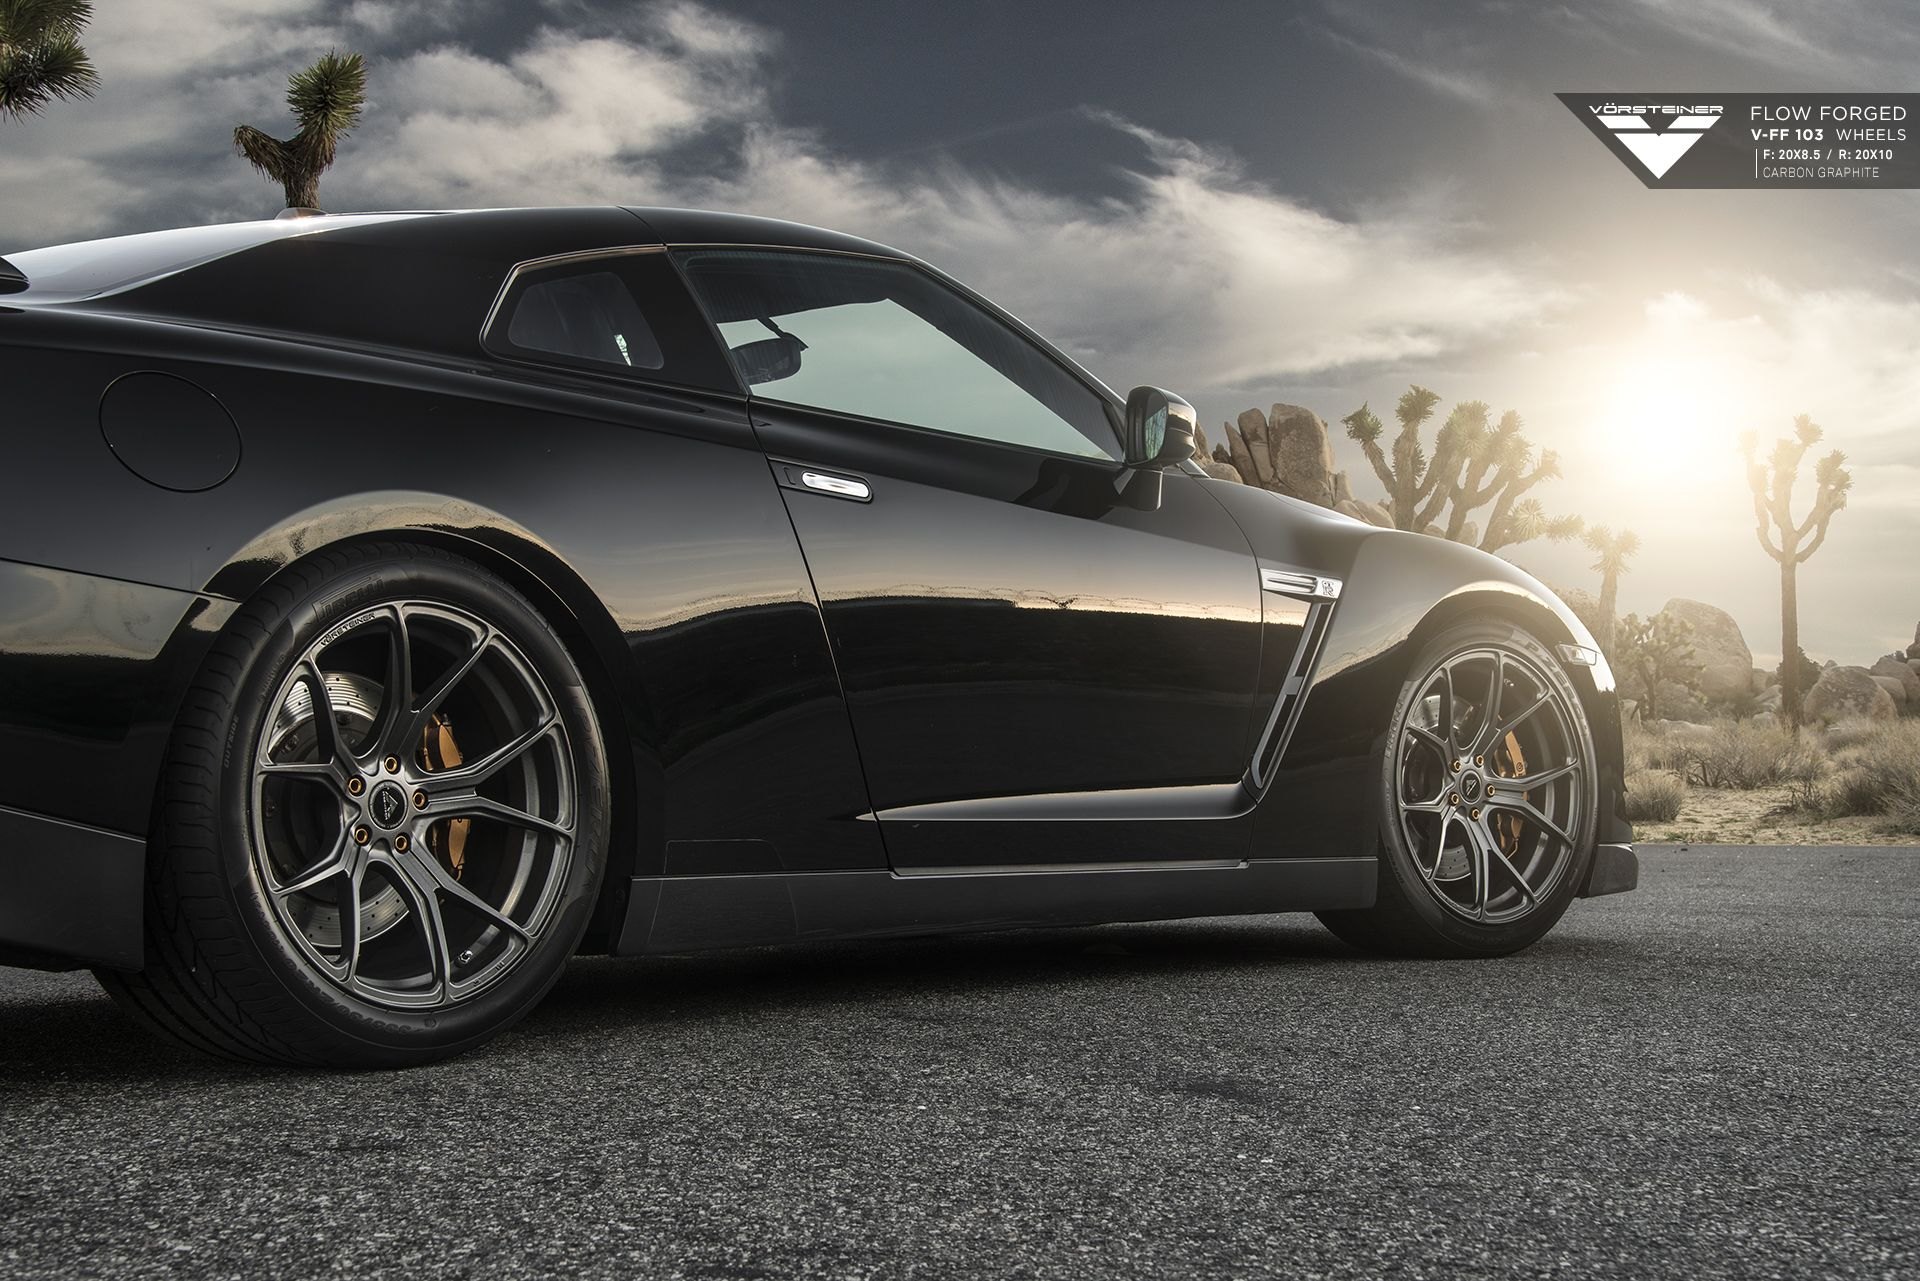 Black Nissan GT-R with Custom Vorsteiner Wheels - Photo by Vorstiner